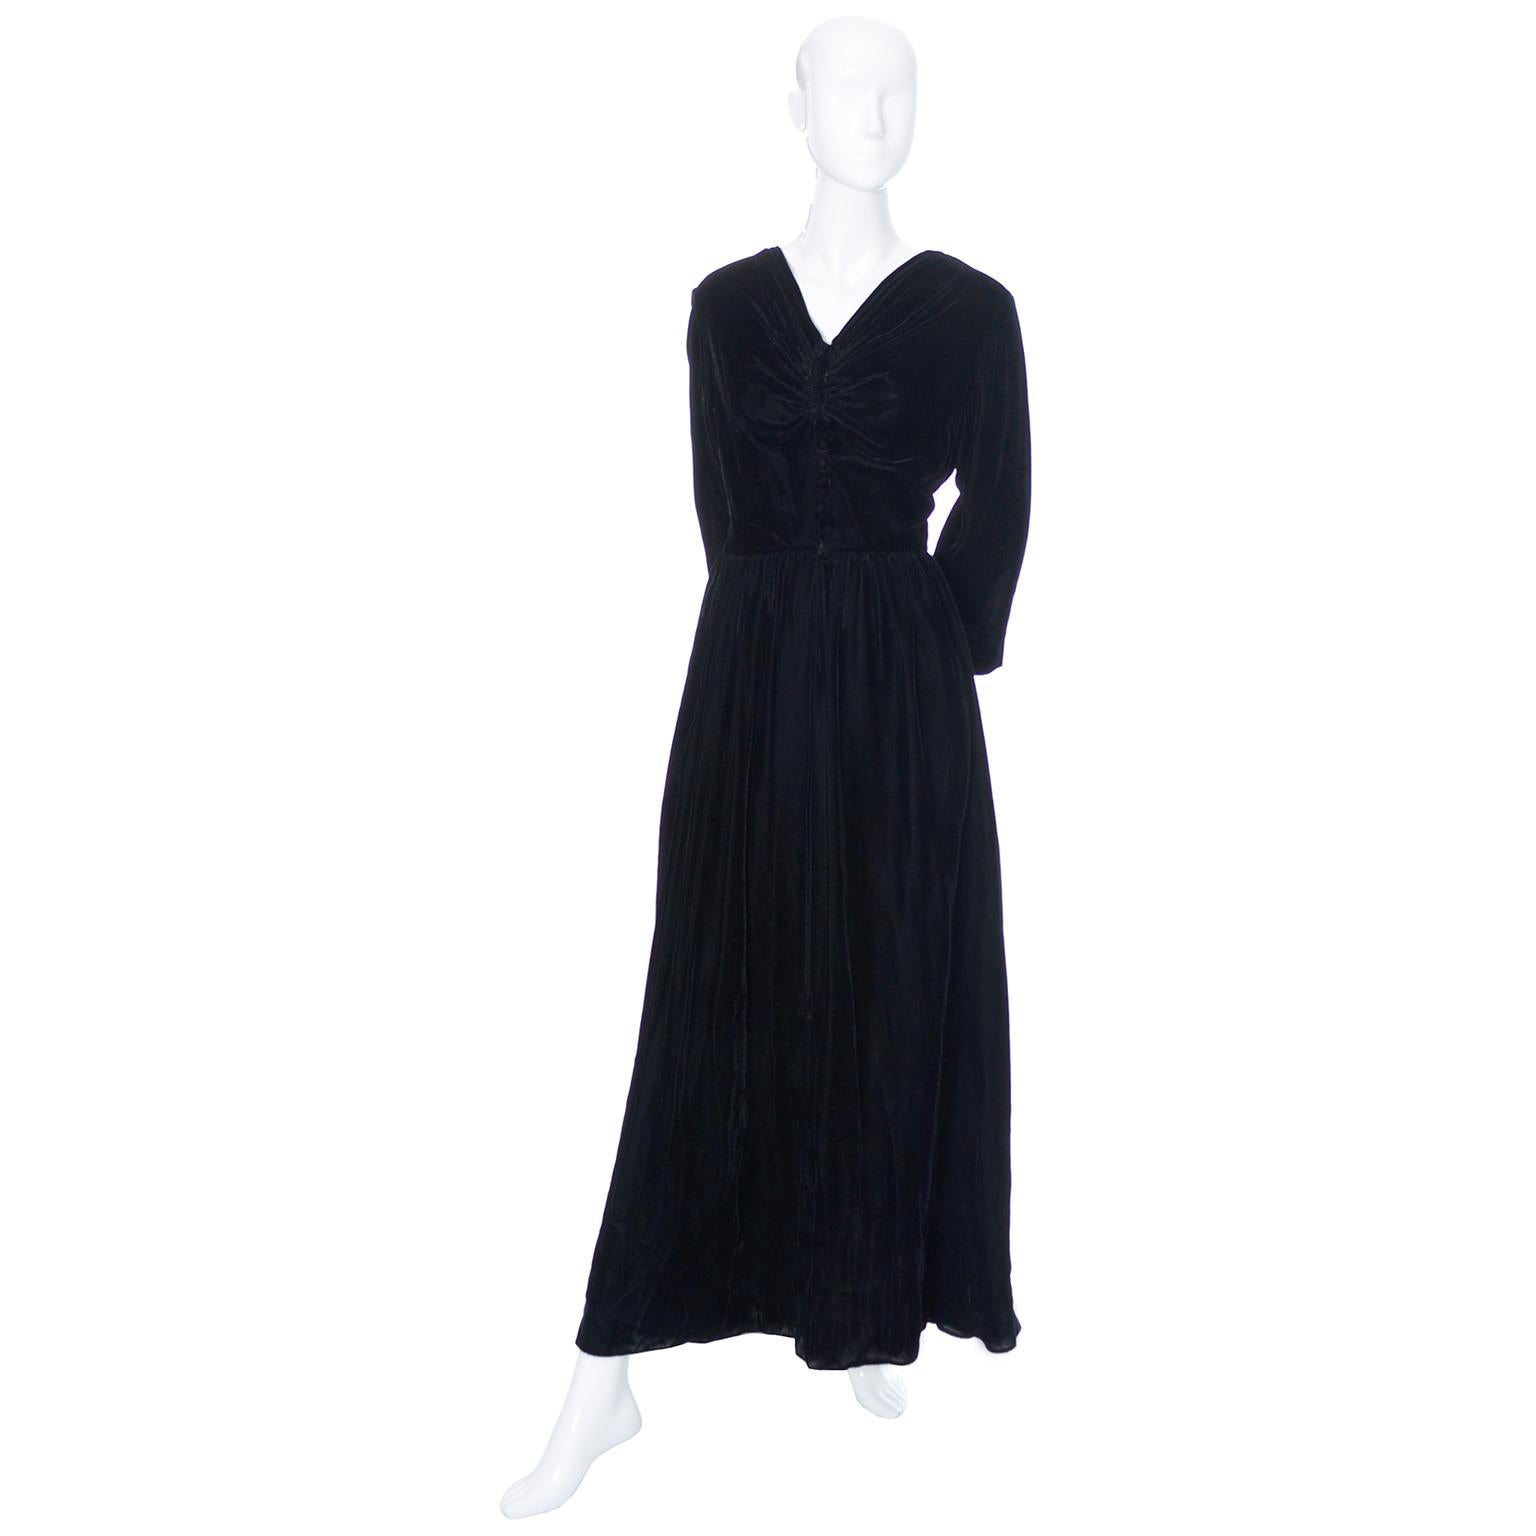 Dieses schwarze Samtkleid von Kamore aus den frühen 1940er Jahren war ursprünglich als Hostessenkleid oder luxuriöse Loungewear für die stilbewusste Frau der 40er Jahre gedacht.  Auch wenn sie nicht mehr als Hostessenkleider getragen werden, finden